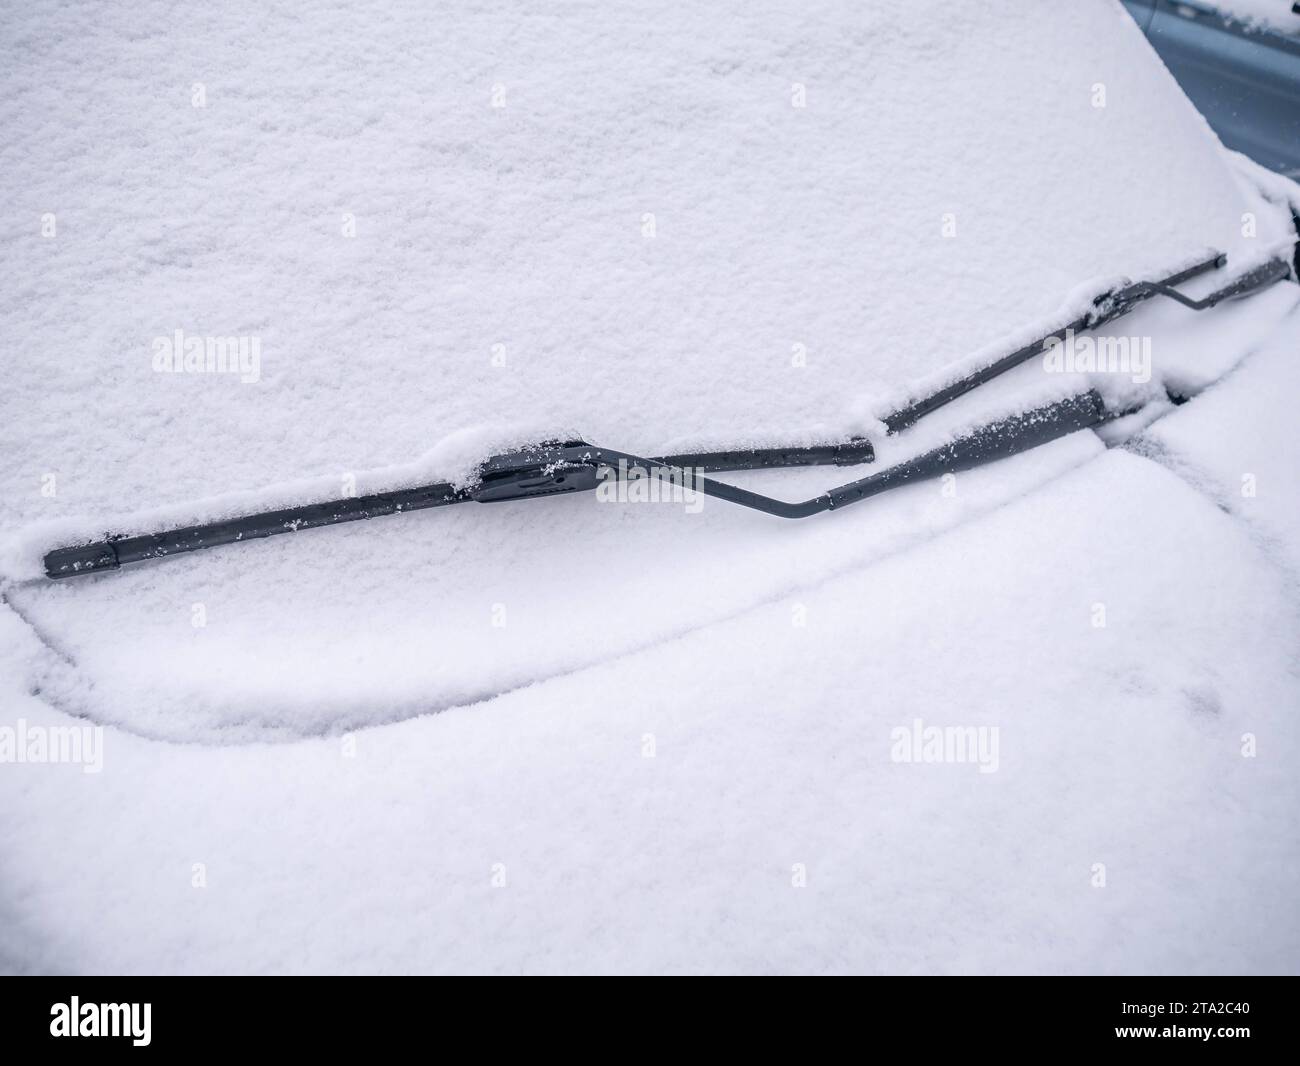 https://c8.alamy.com/comp/2TA2C40/chemnitz-deutschland-november-2023-im-bild-verschneite-und-vereiste-frontscheibe-mit-scheibenwischer-im-winter-frost-chemnitz-germany-november-2023-in-the-picture-snow-covered-and-icy-windshield-with-windshield-wiper-in-winter-frost-copyright-xfotostandxxnachtigalx-credit-imagoalamy-live-news-2TA2C40.jpg